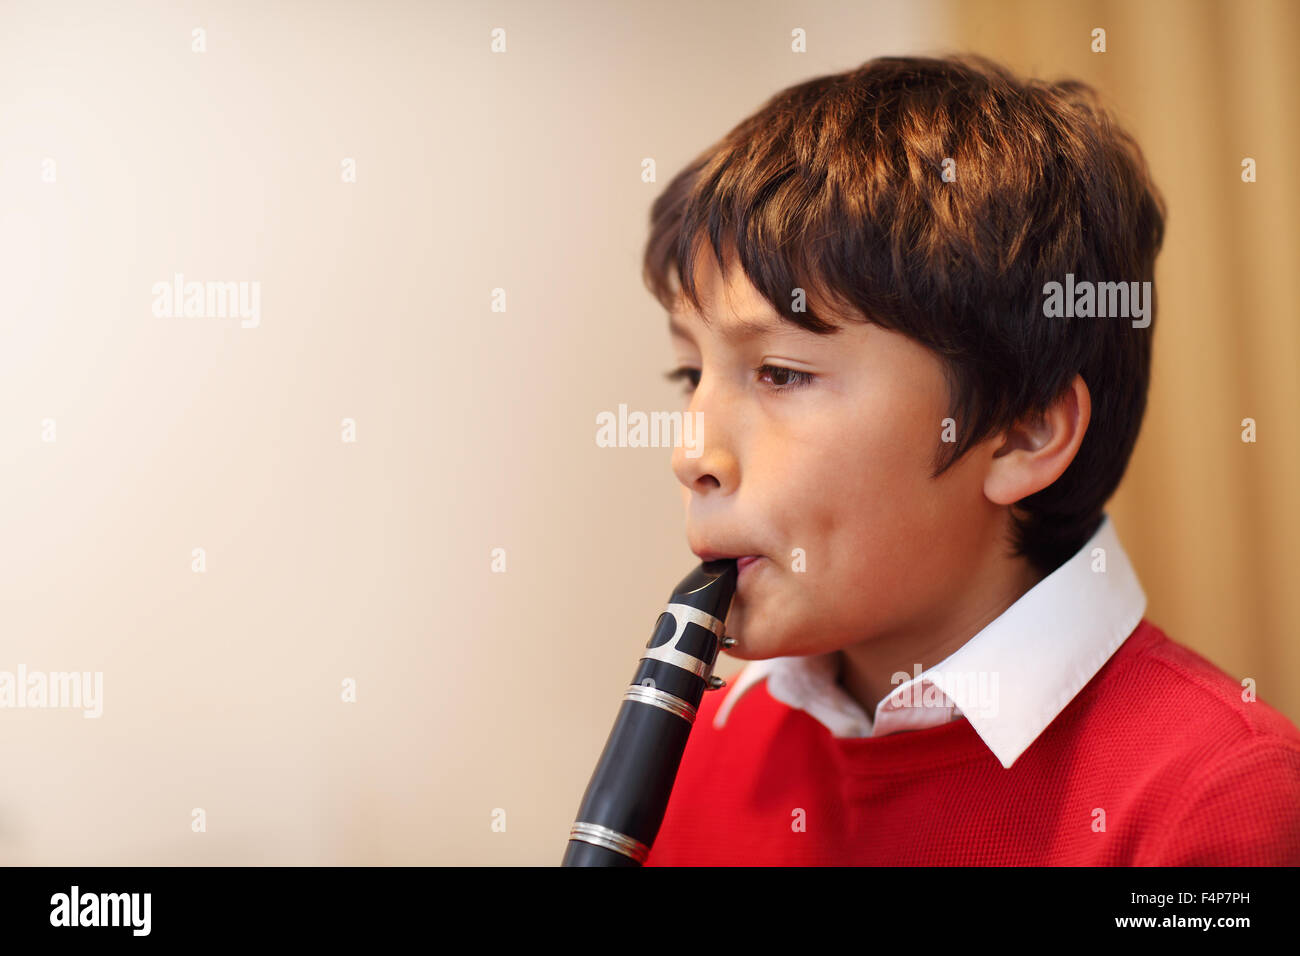 Jeune garçon jouant de la clarinette - profondeur de champ - des tons chauds. Copy space Banque D'Images